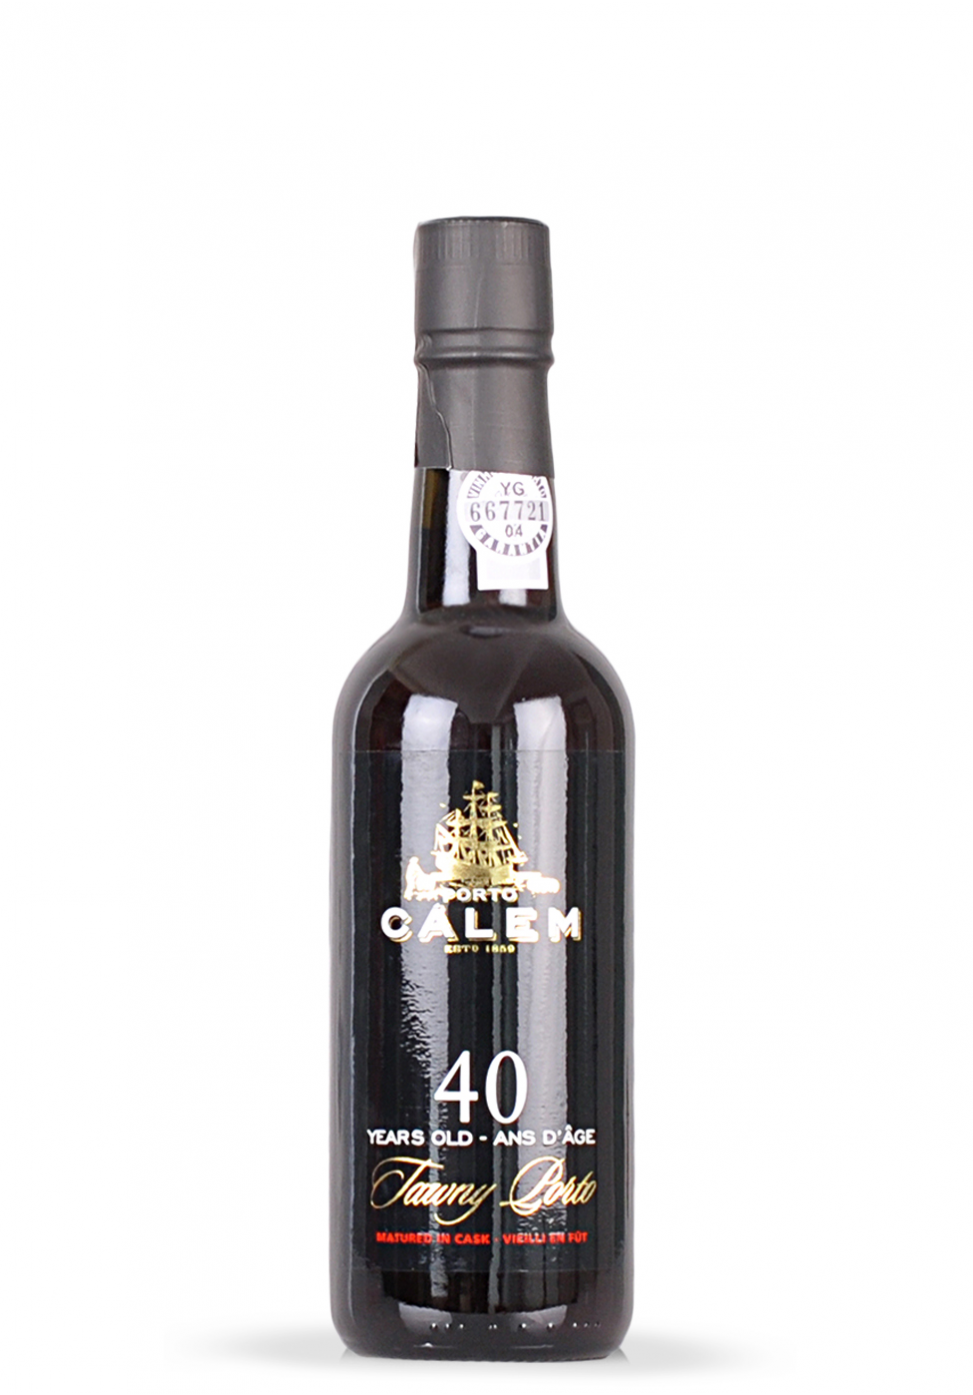 Vin Calem 40 ani, Tawny Porto (0.375L) Image